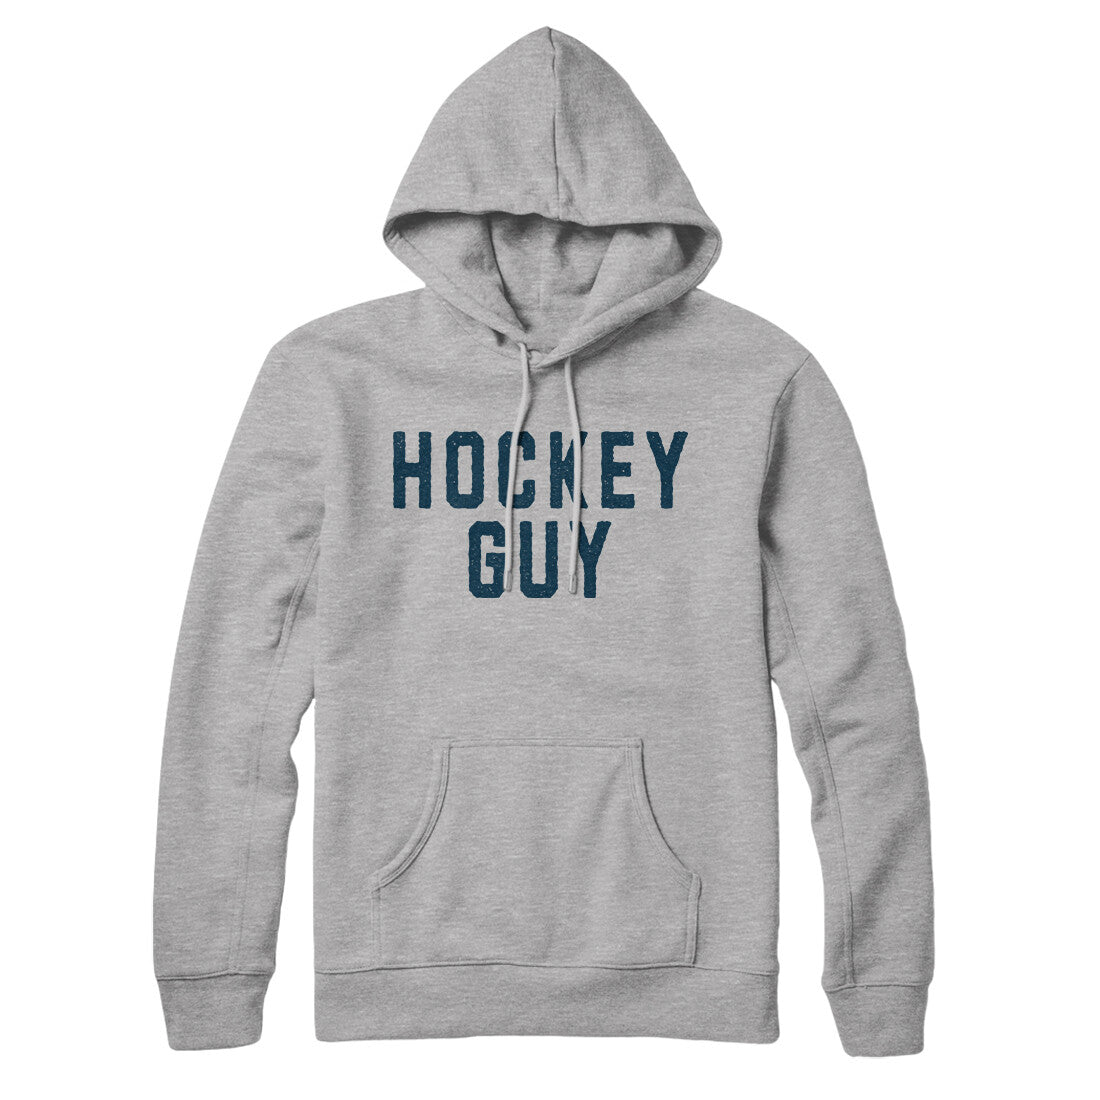 Hockey Guy in Heather Grey Color